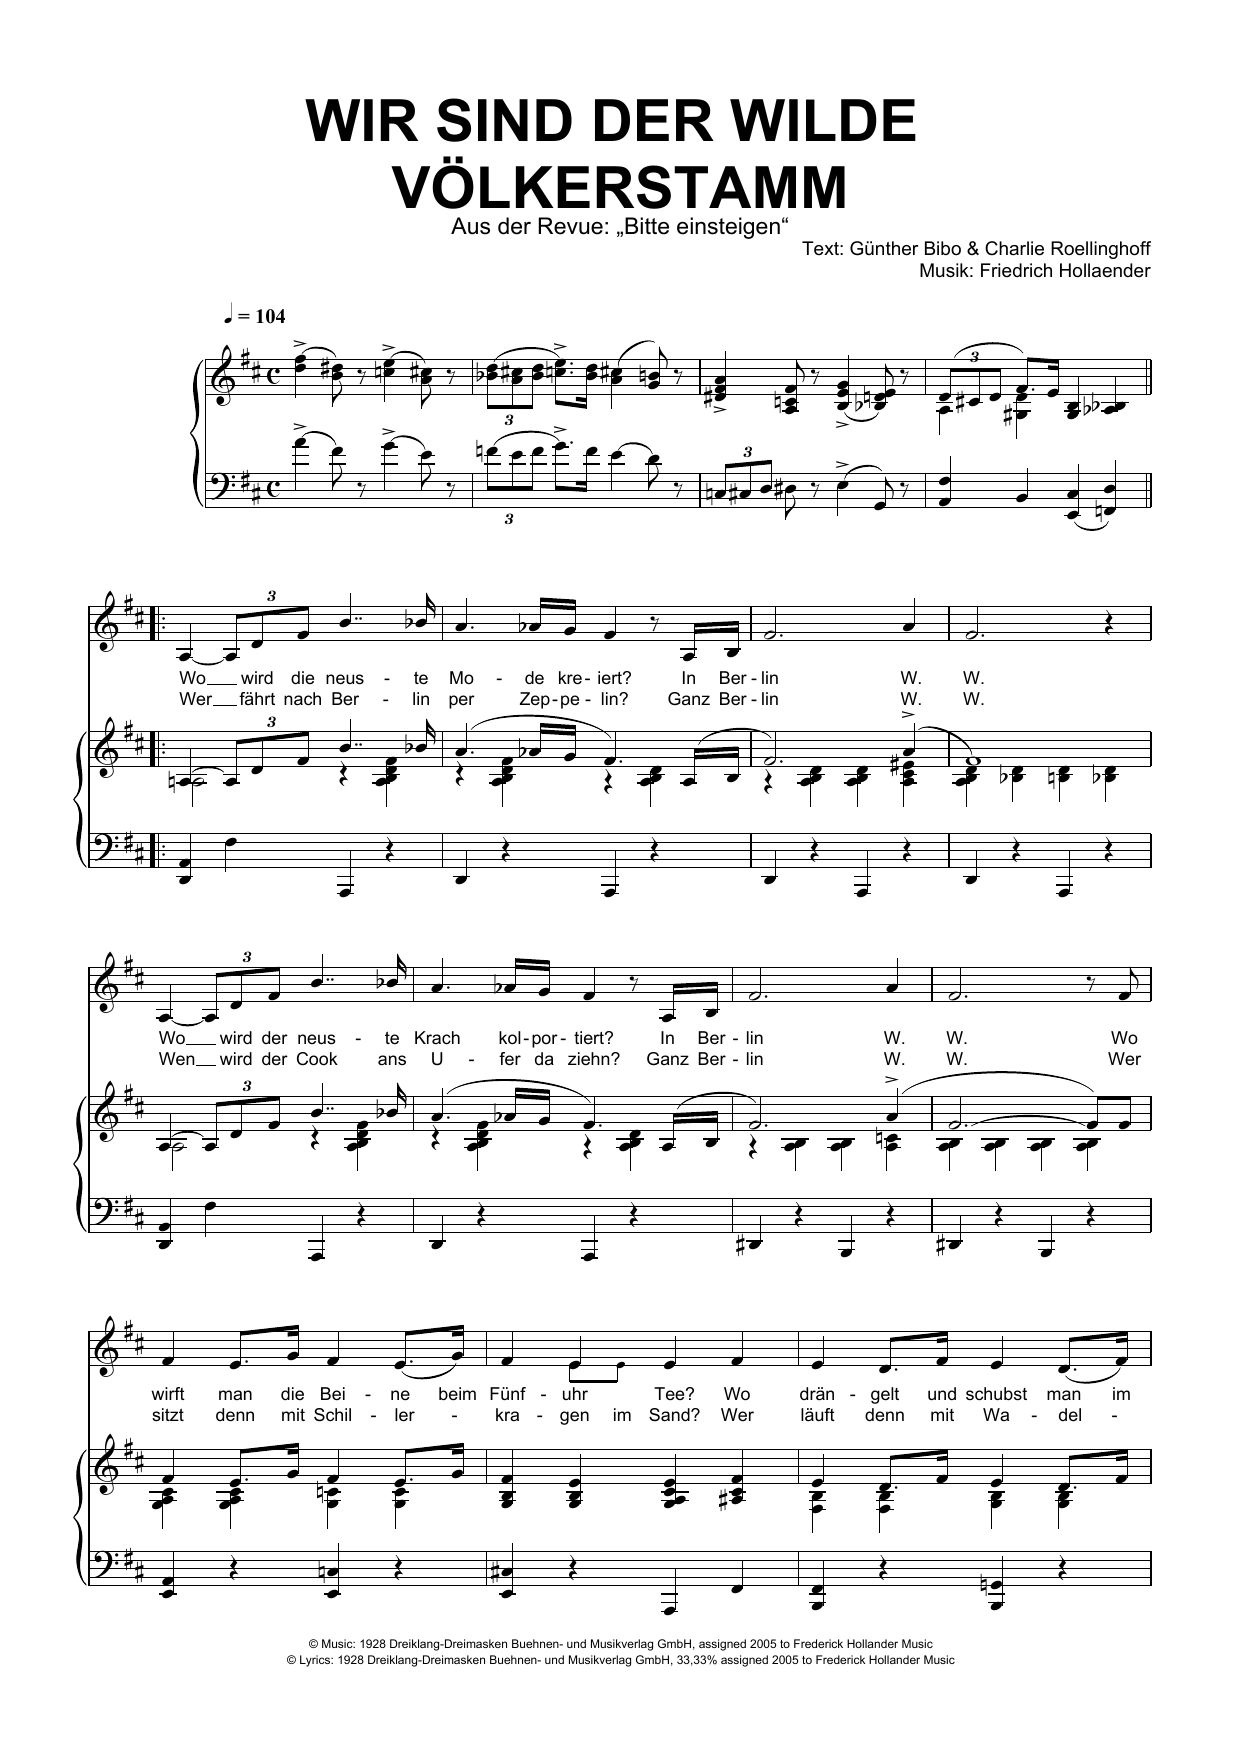 Download Friedrich Hollaender Wir Sind Der Wilde Völkerstamm Sheet Music and learn how to play Piano & Vocal PDF digital score in minutes